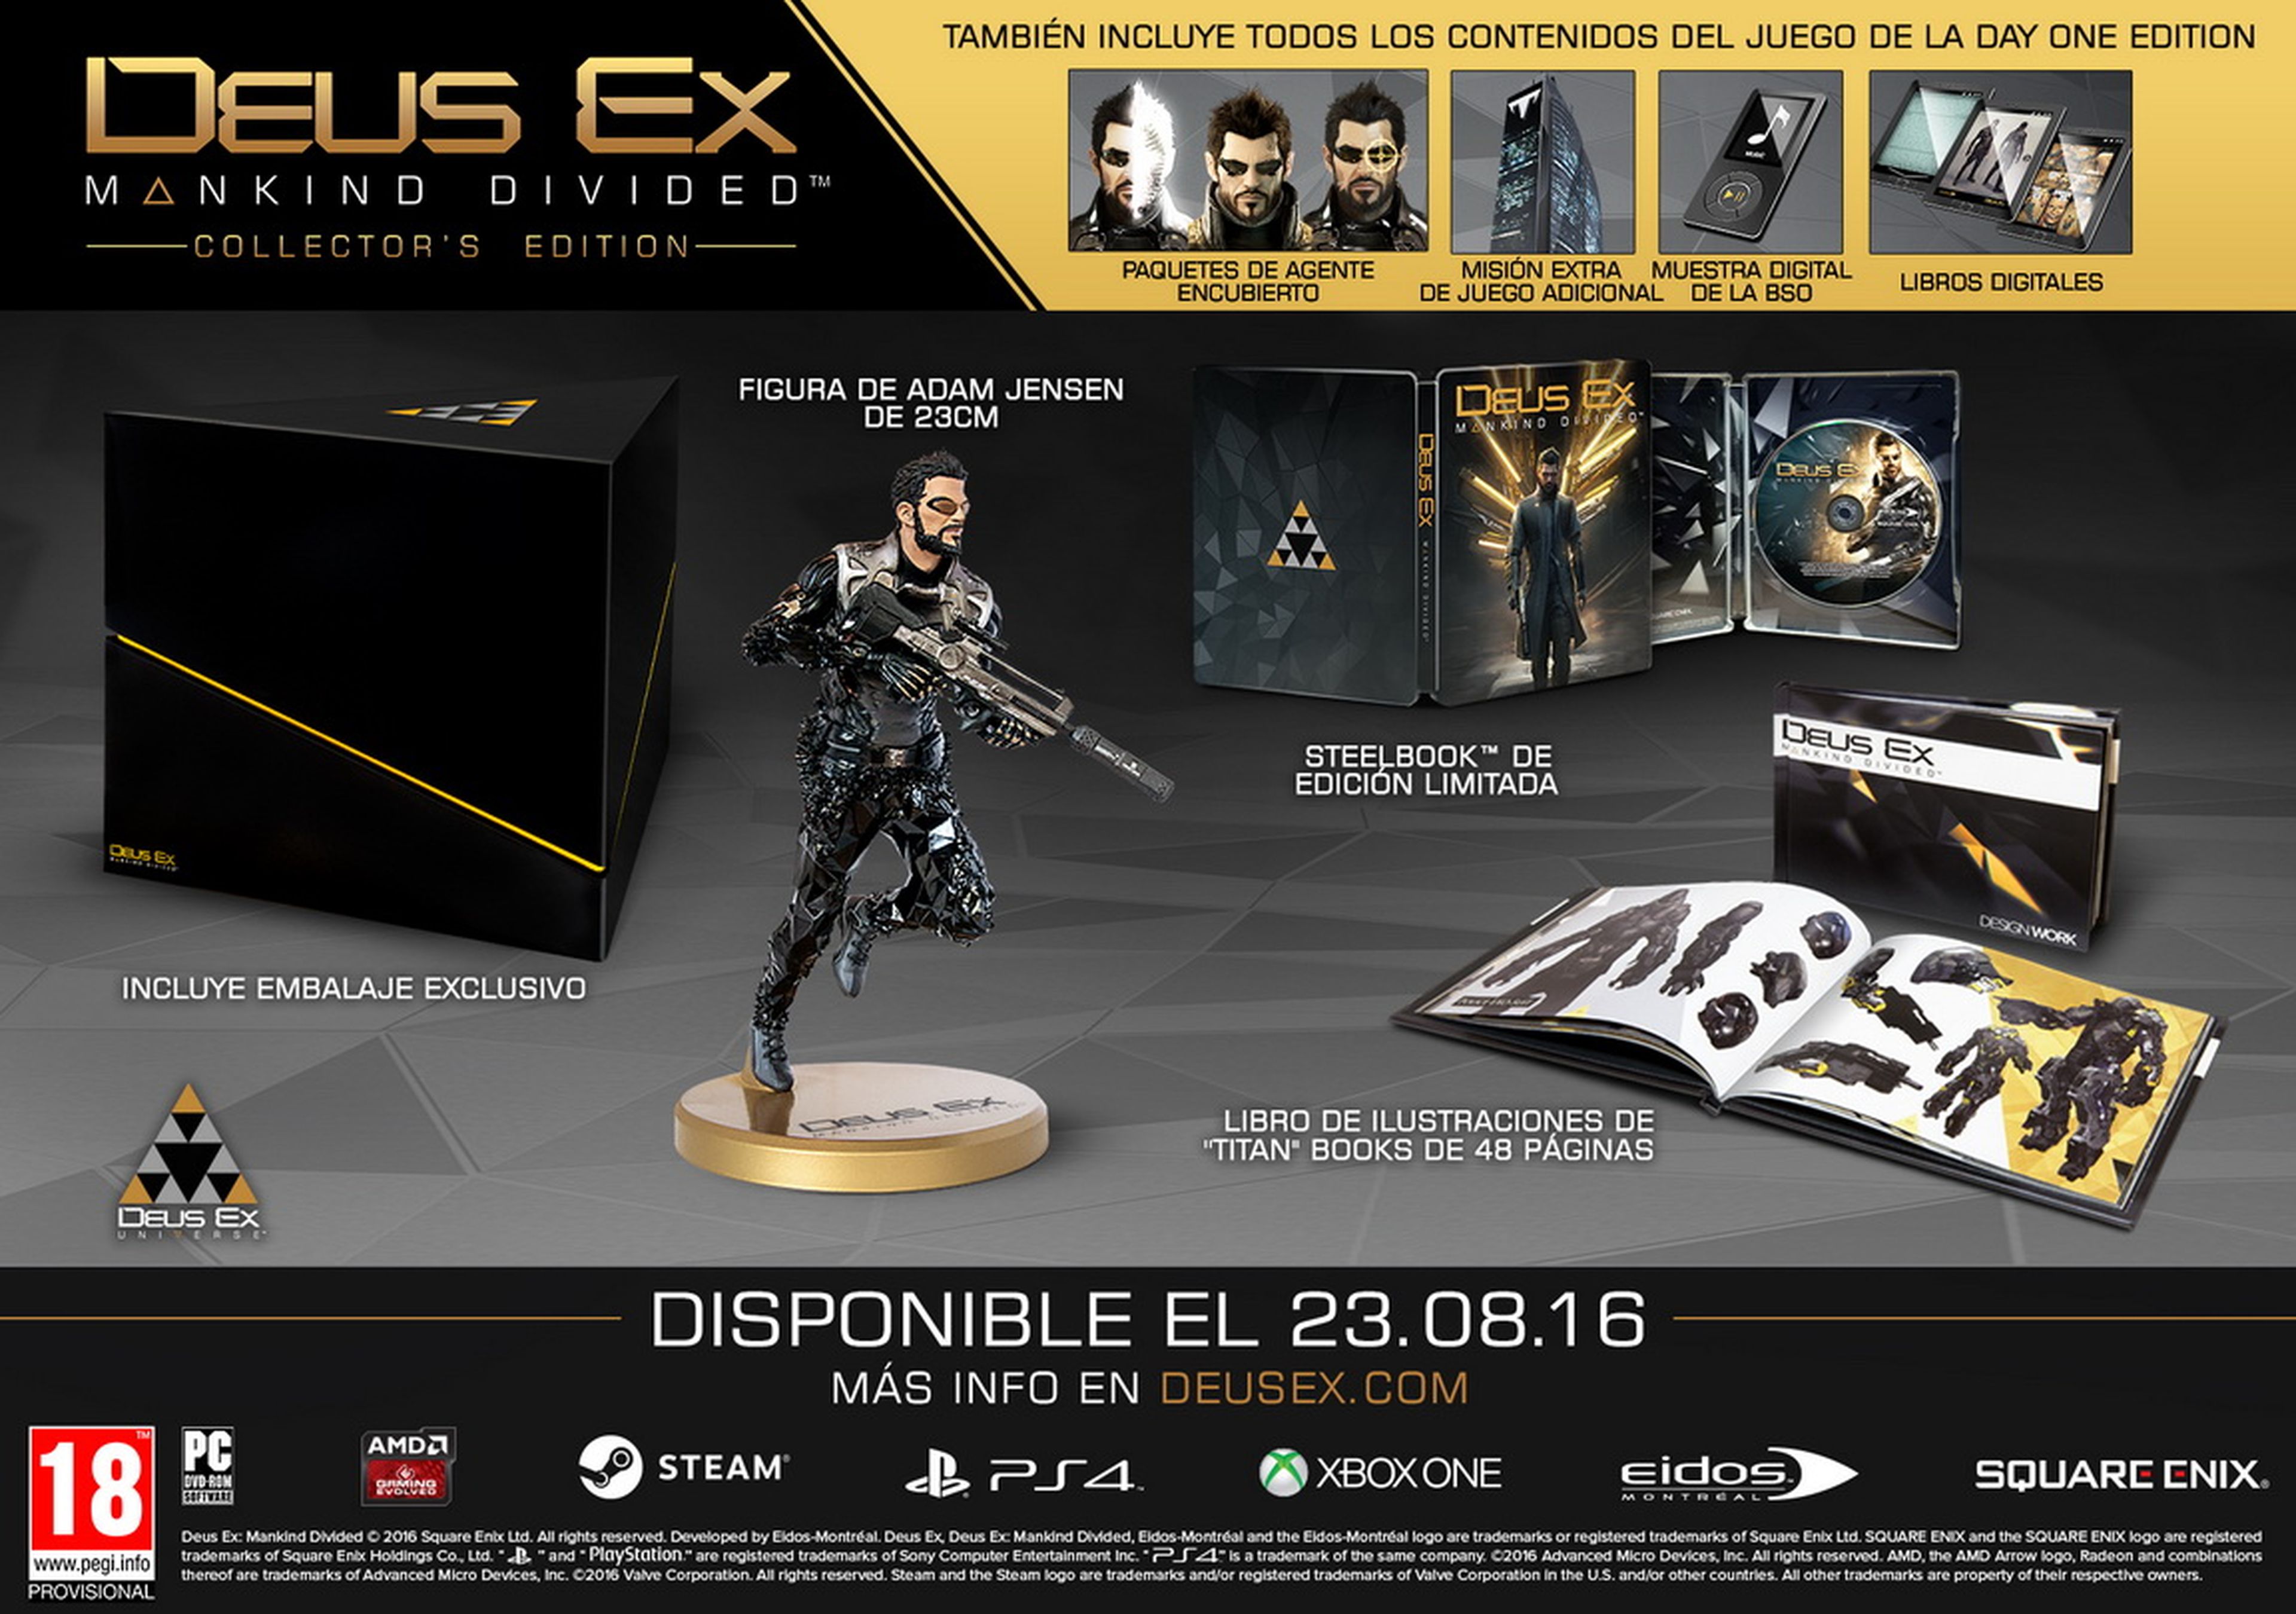 Deus Ex Mankind Divided - Tráiler y ediciones